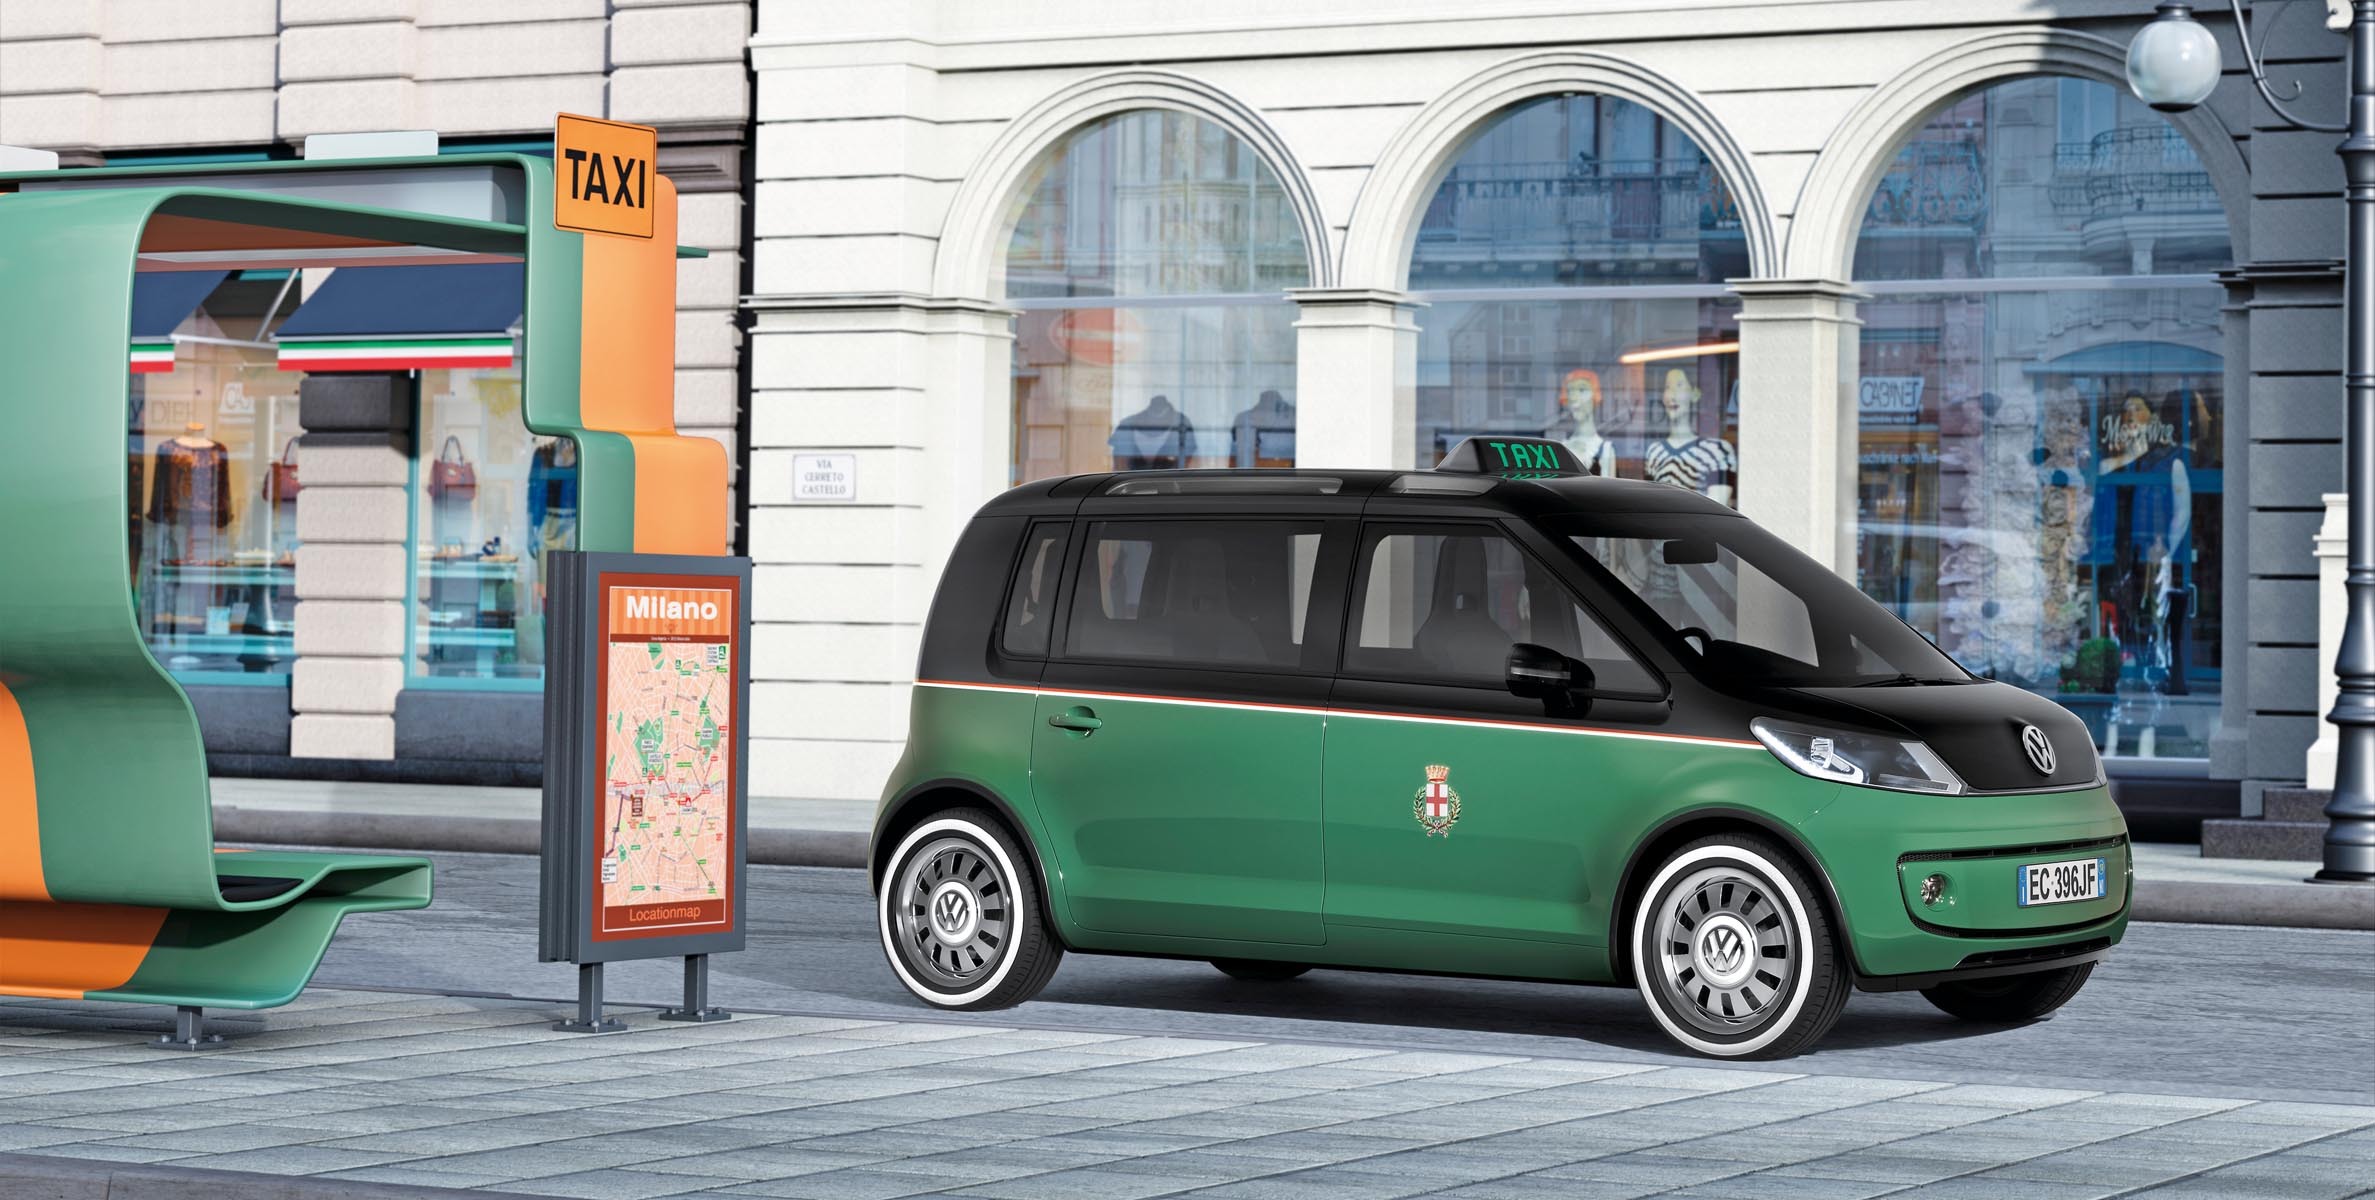 Volkswagen Milano Taxi prefigureaza un nou concept de mobilitate urbana